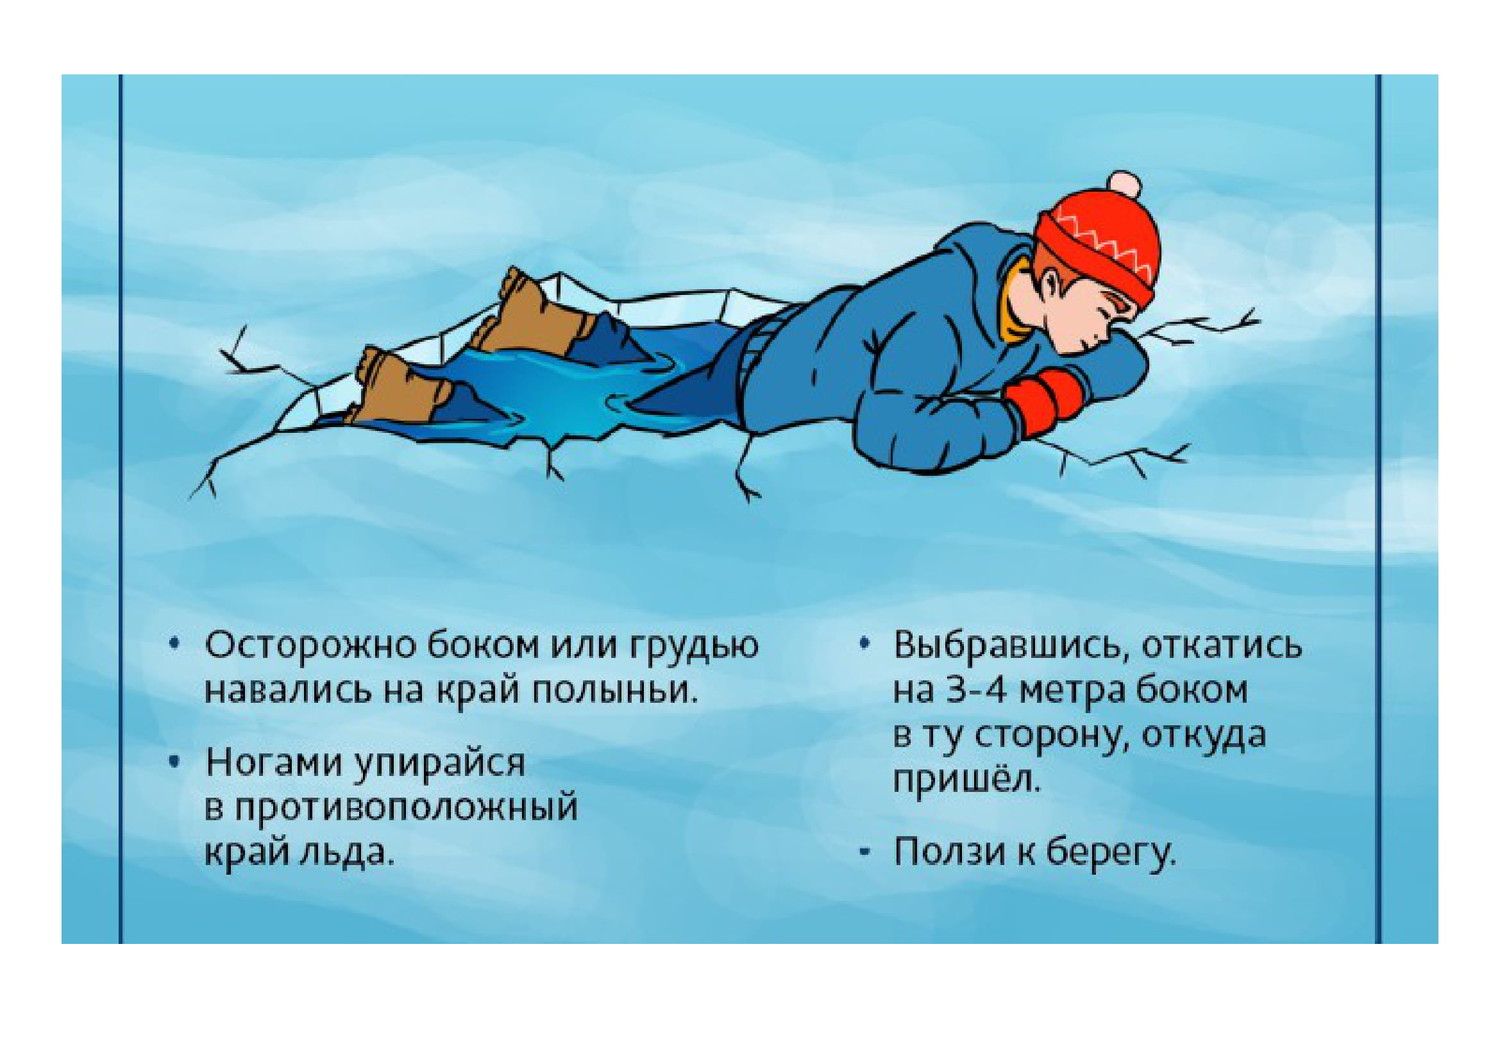 Безопасность на льду для детей